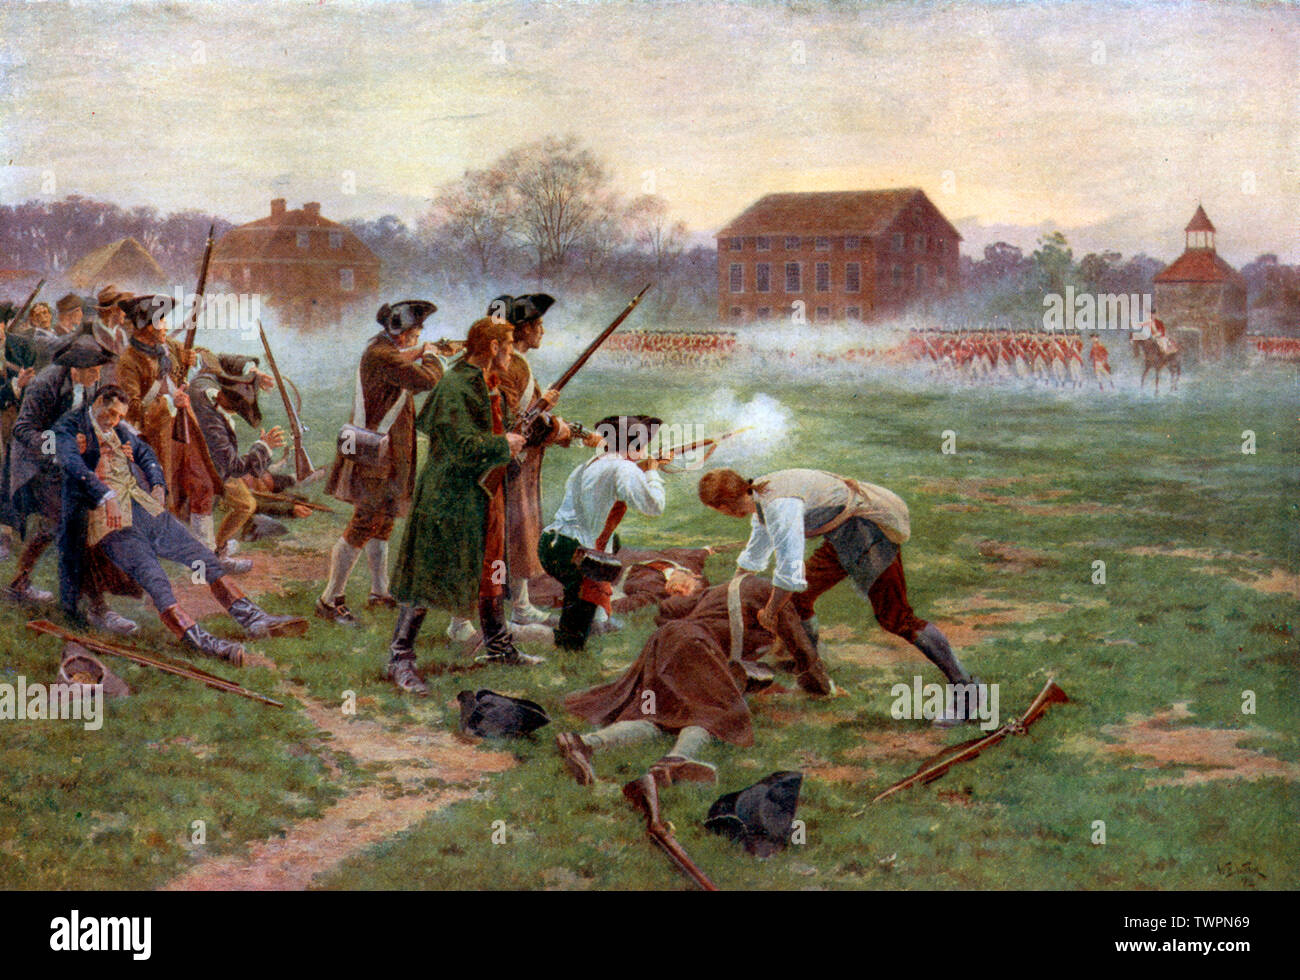 Le premier combat pour l'indépendance, Lexington, commune avril 19th, 1775' (1910). Par William Barnes Wollen (1857-1936). La bataille de Lexington et Concord ont été les premiers dans les engagements militaires de la guerre d'Indépendance américaine. Banque D'Images